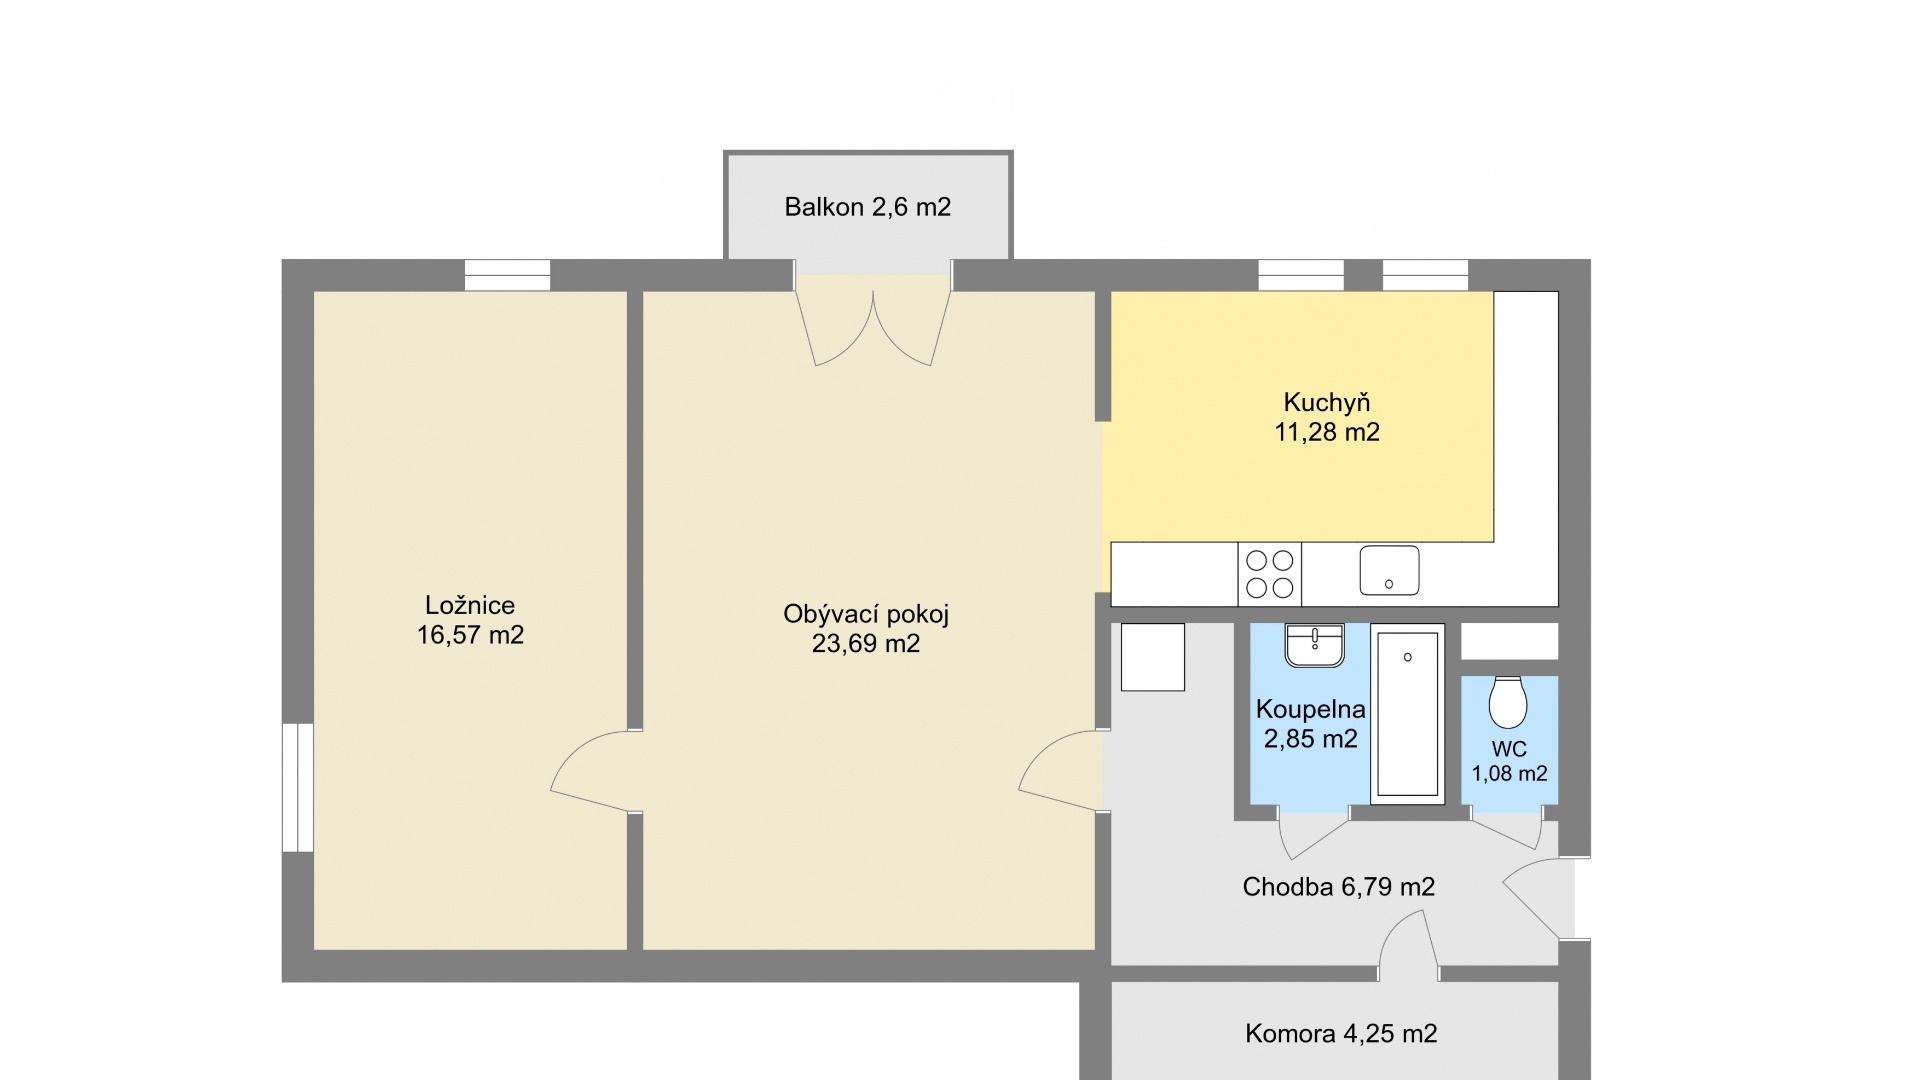 Pronájem bytu 2+1, 66m² s balkonem, sklepem a vlastním parkovacím stáním, Nupaky, ulice Luční